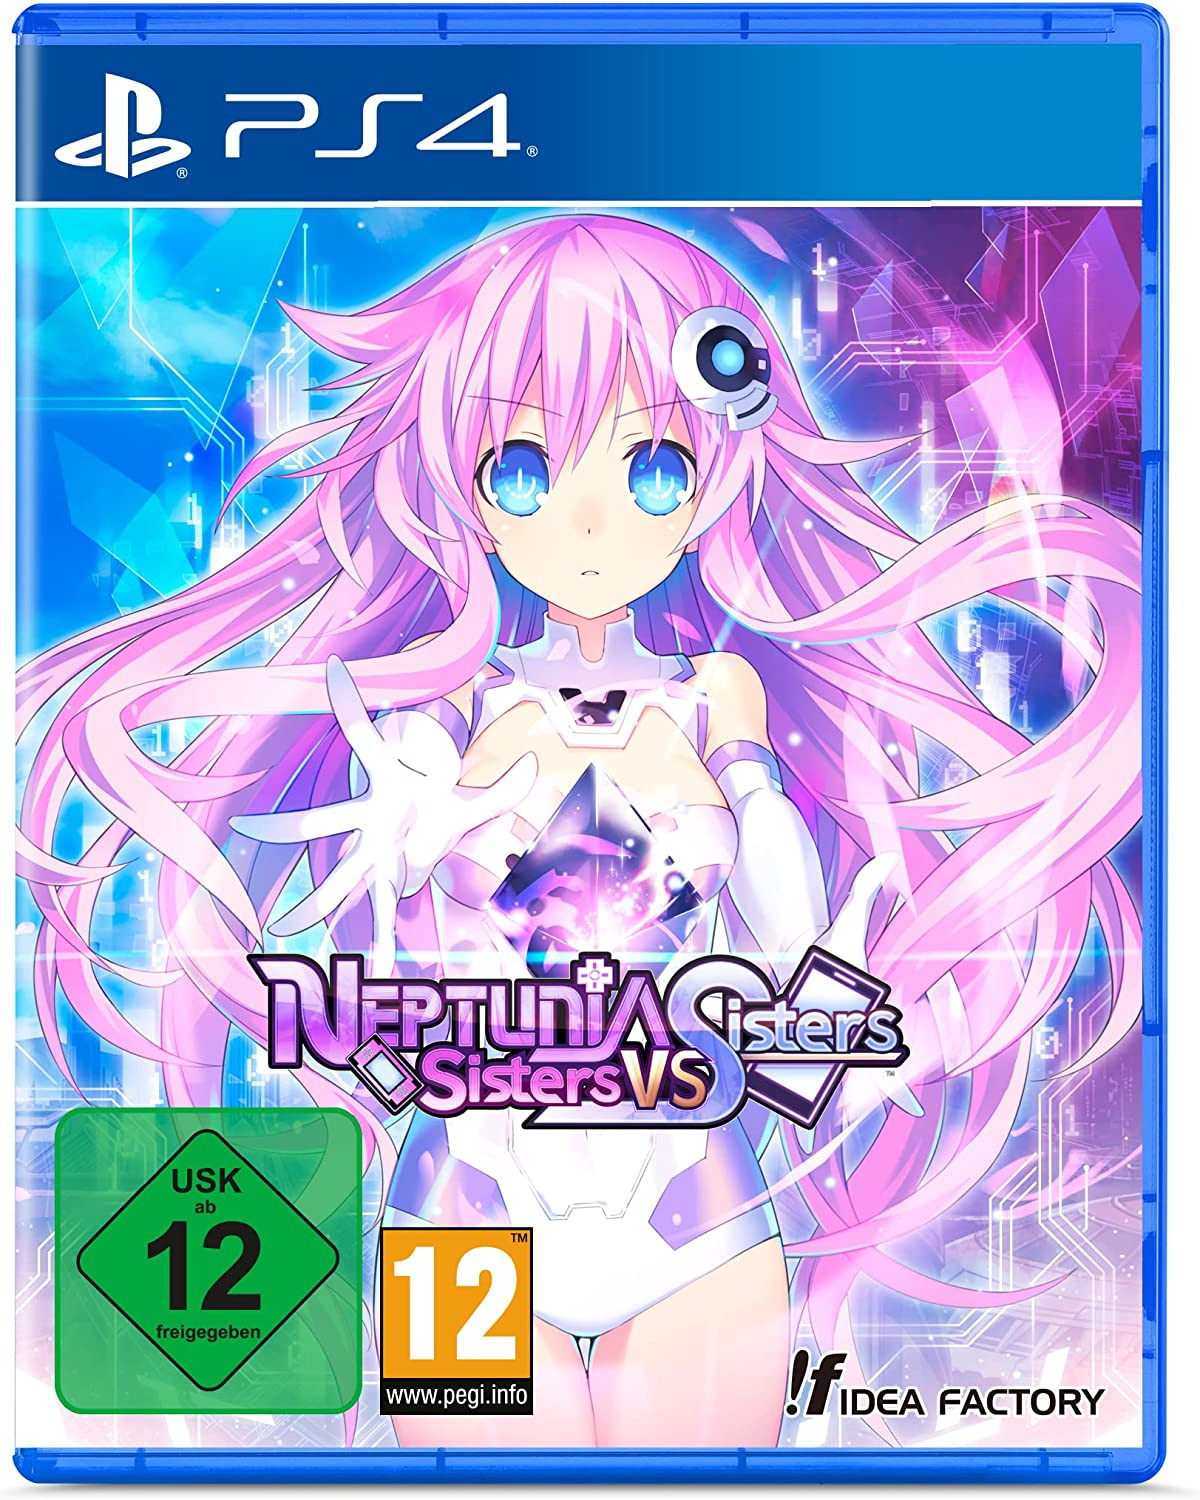 Neptunia: Sisters VS Sisters (PS4), Idea Factory